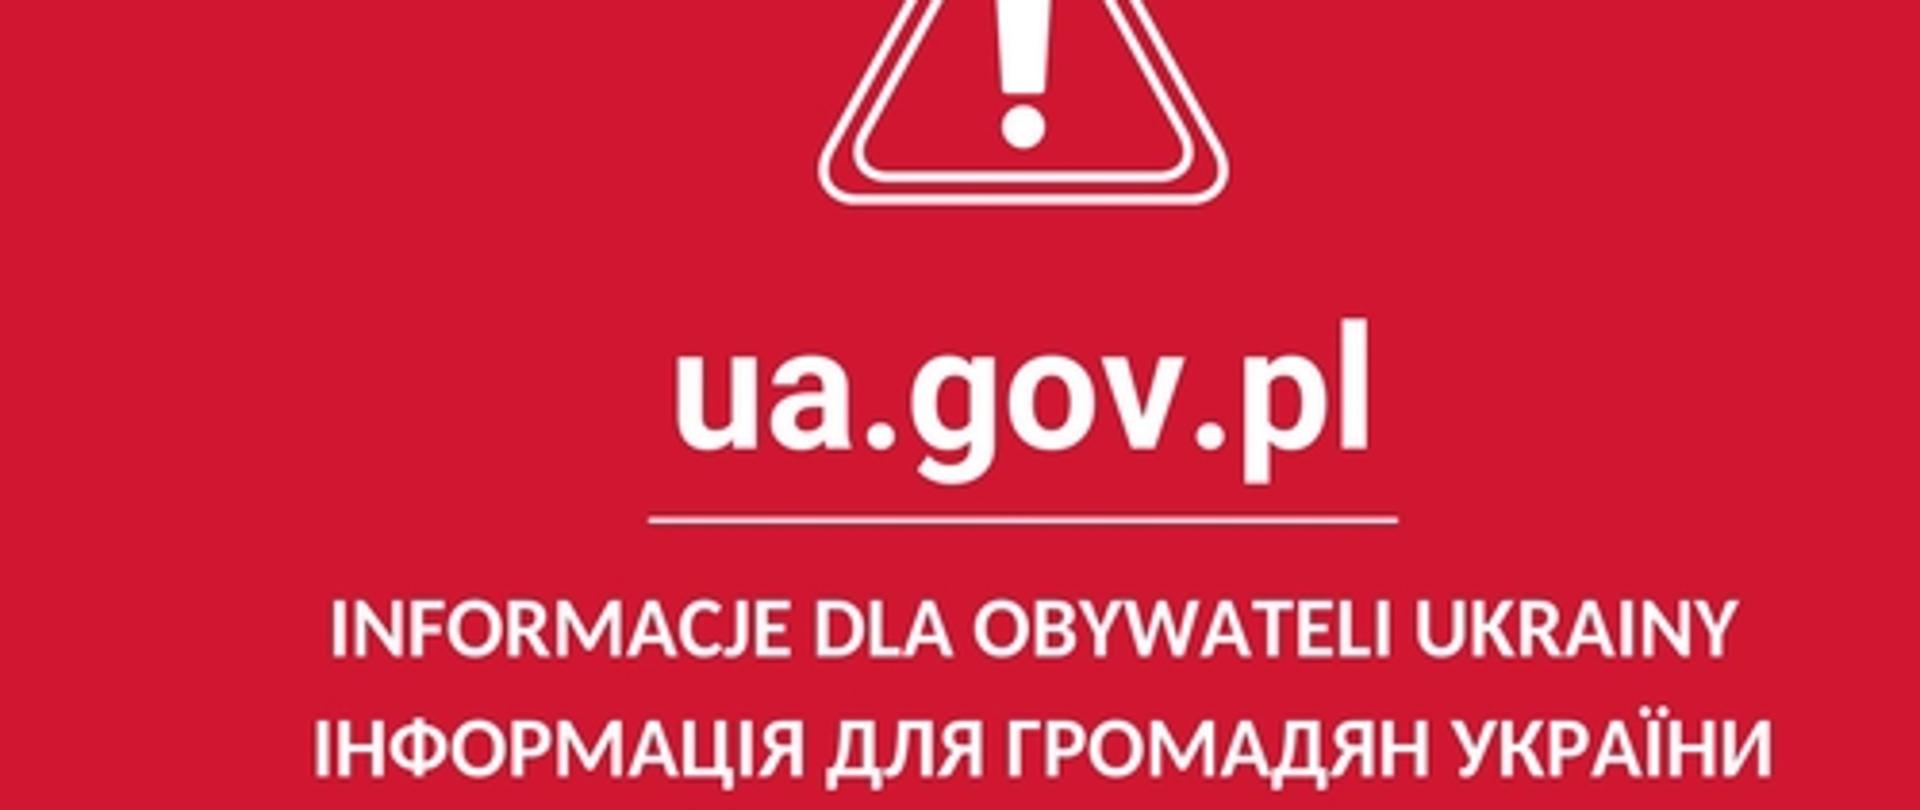 urząd do spraw cudzoziemców - czerwone tło na nim adres strony internetowej ua.gov.pl